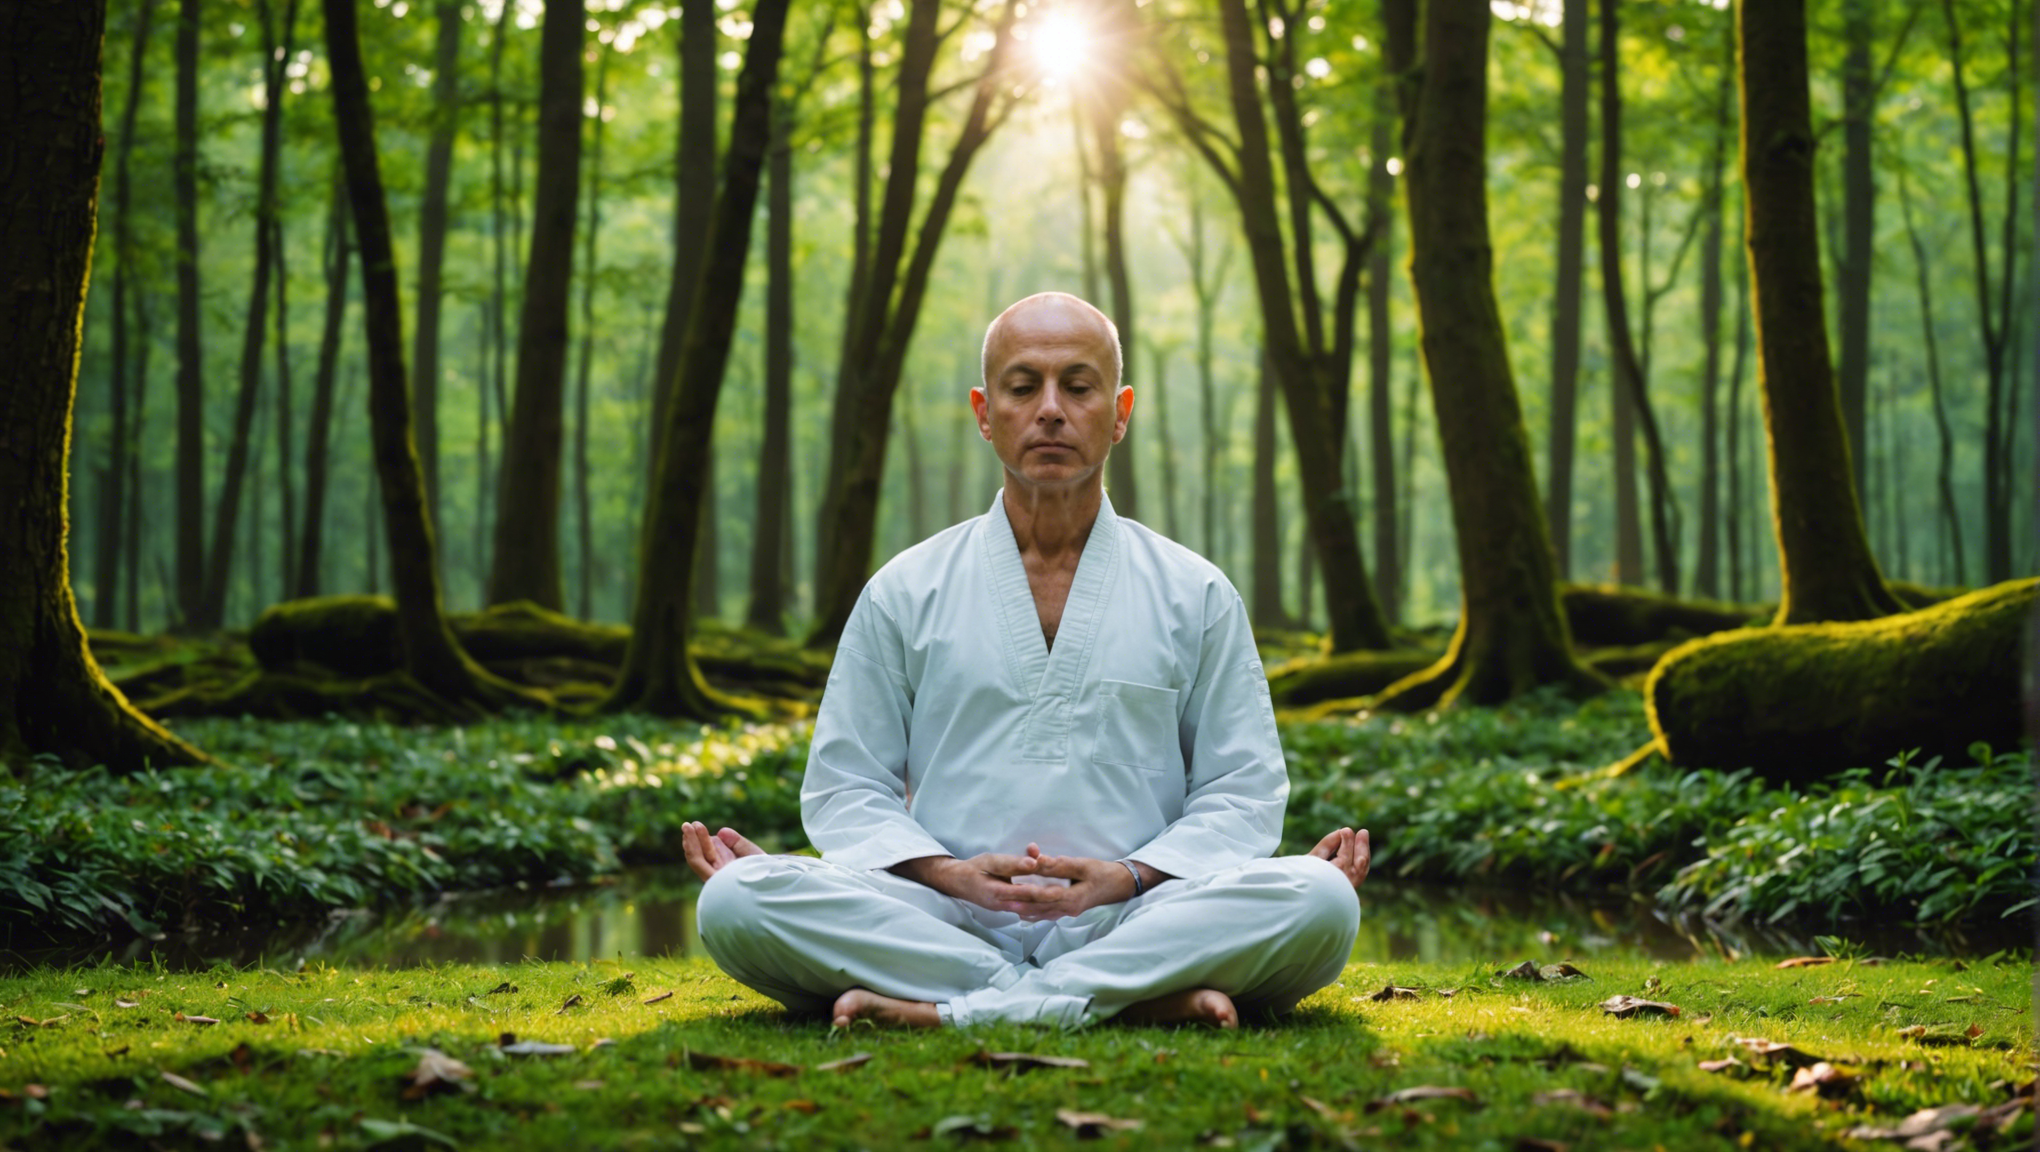 découvrez en quoi consiste la méditation mbsr et comment elle peut vous aider à améliorer votre bien-être et à gérer le stress dans votre vie quotidienne.